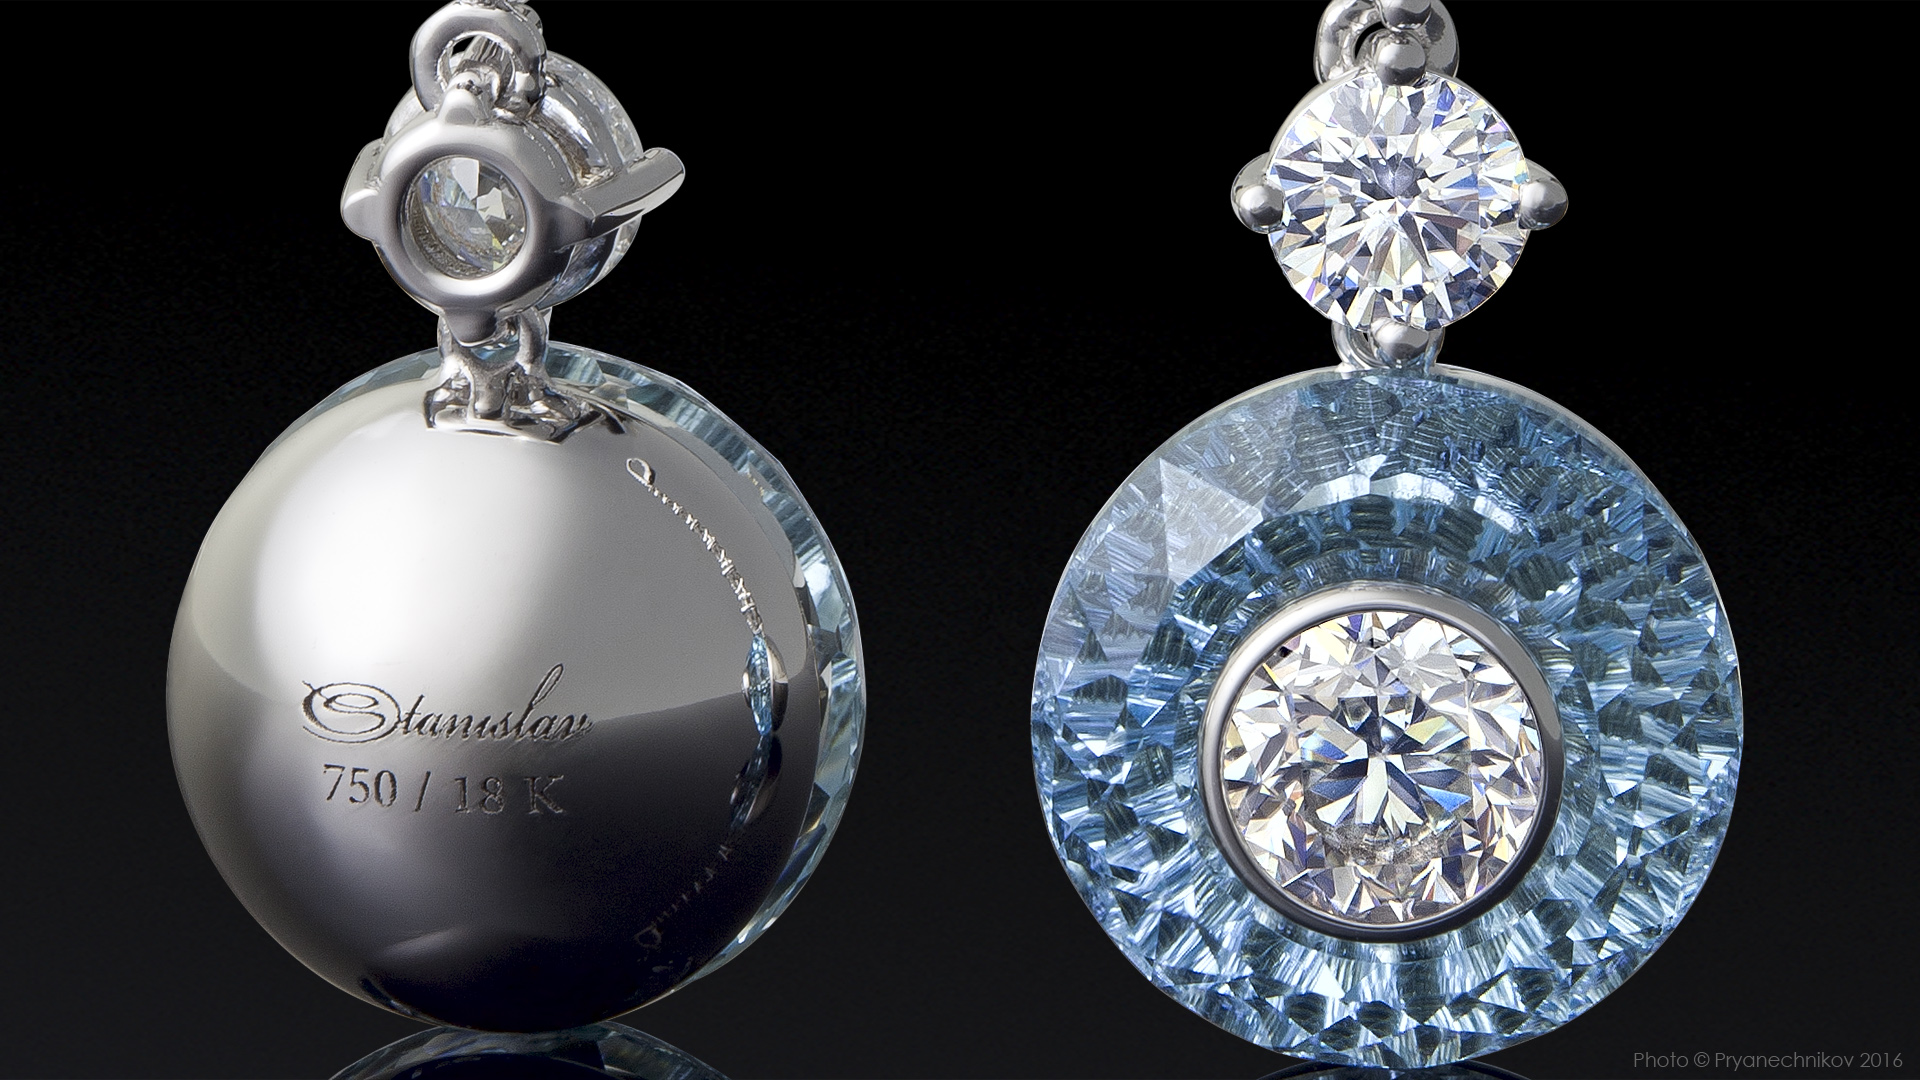 Рекламное фото ювелирных изделий с драгоценными камнями и бриллиантами